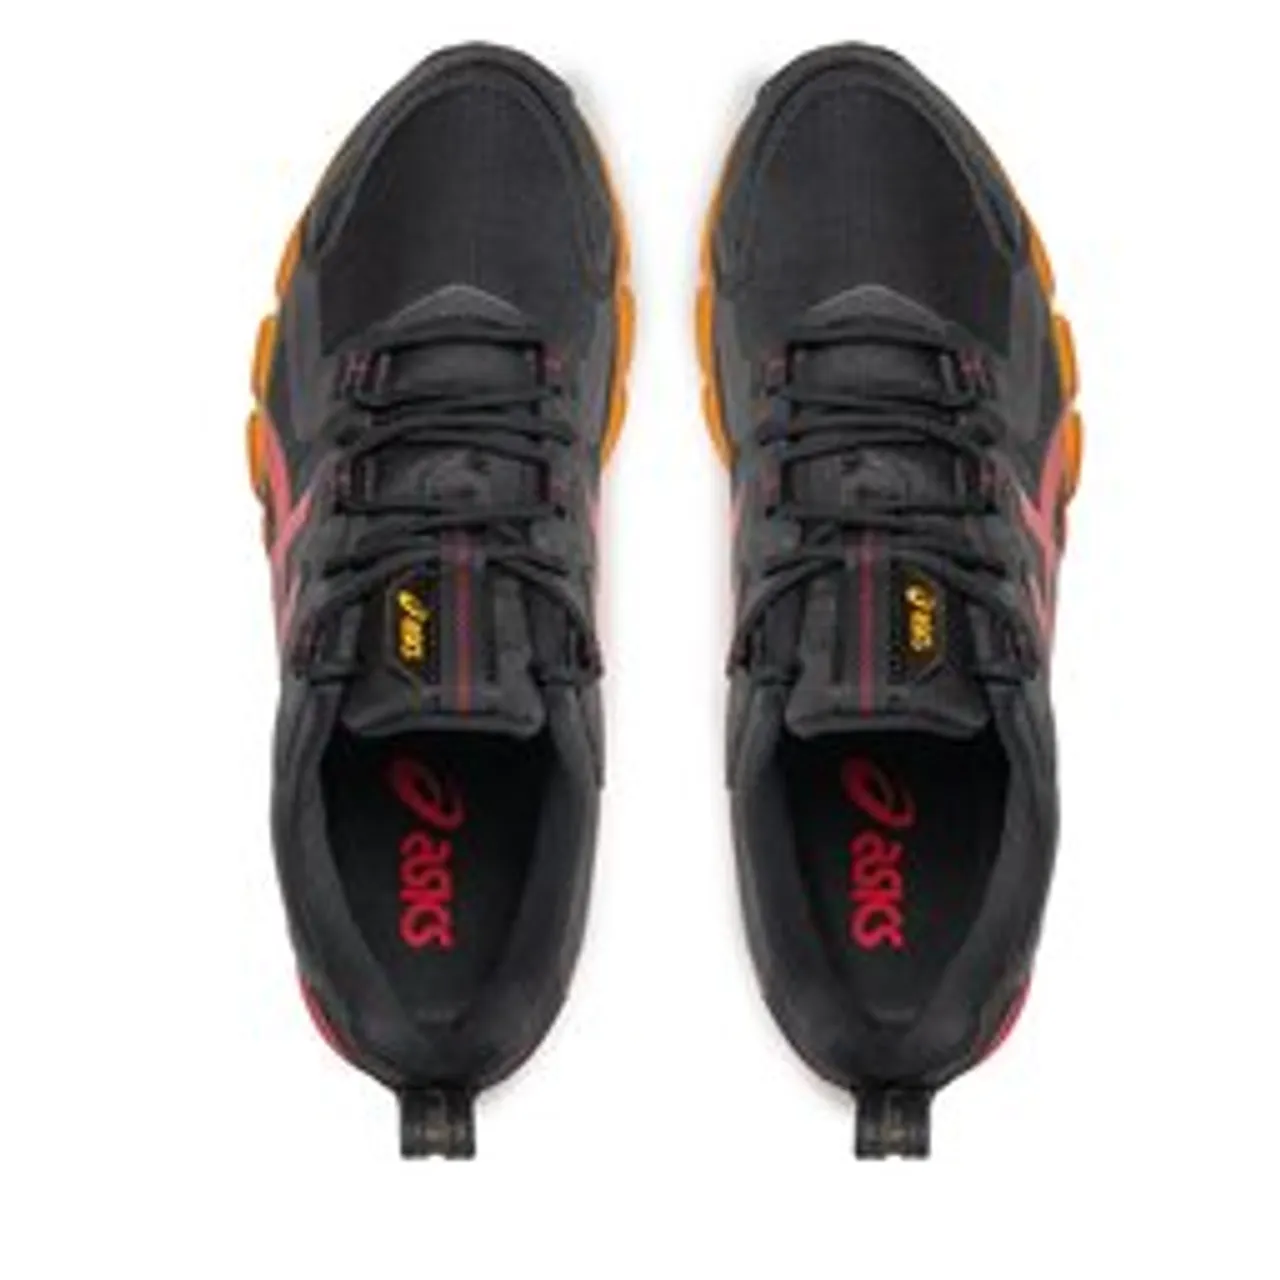 Sneakers Asics Gel Quantum 180 1201A831 Black/Red Alert 001